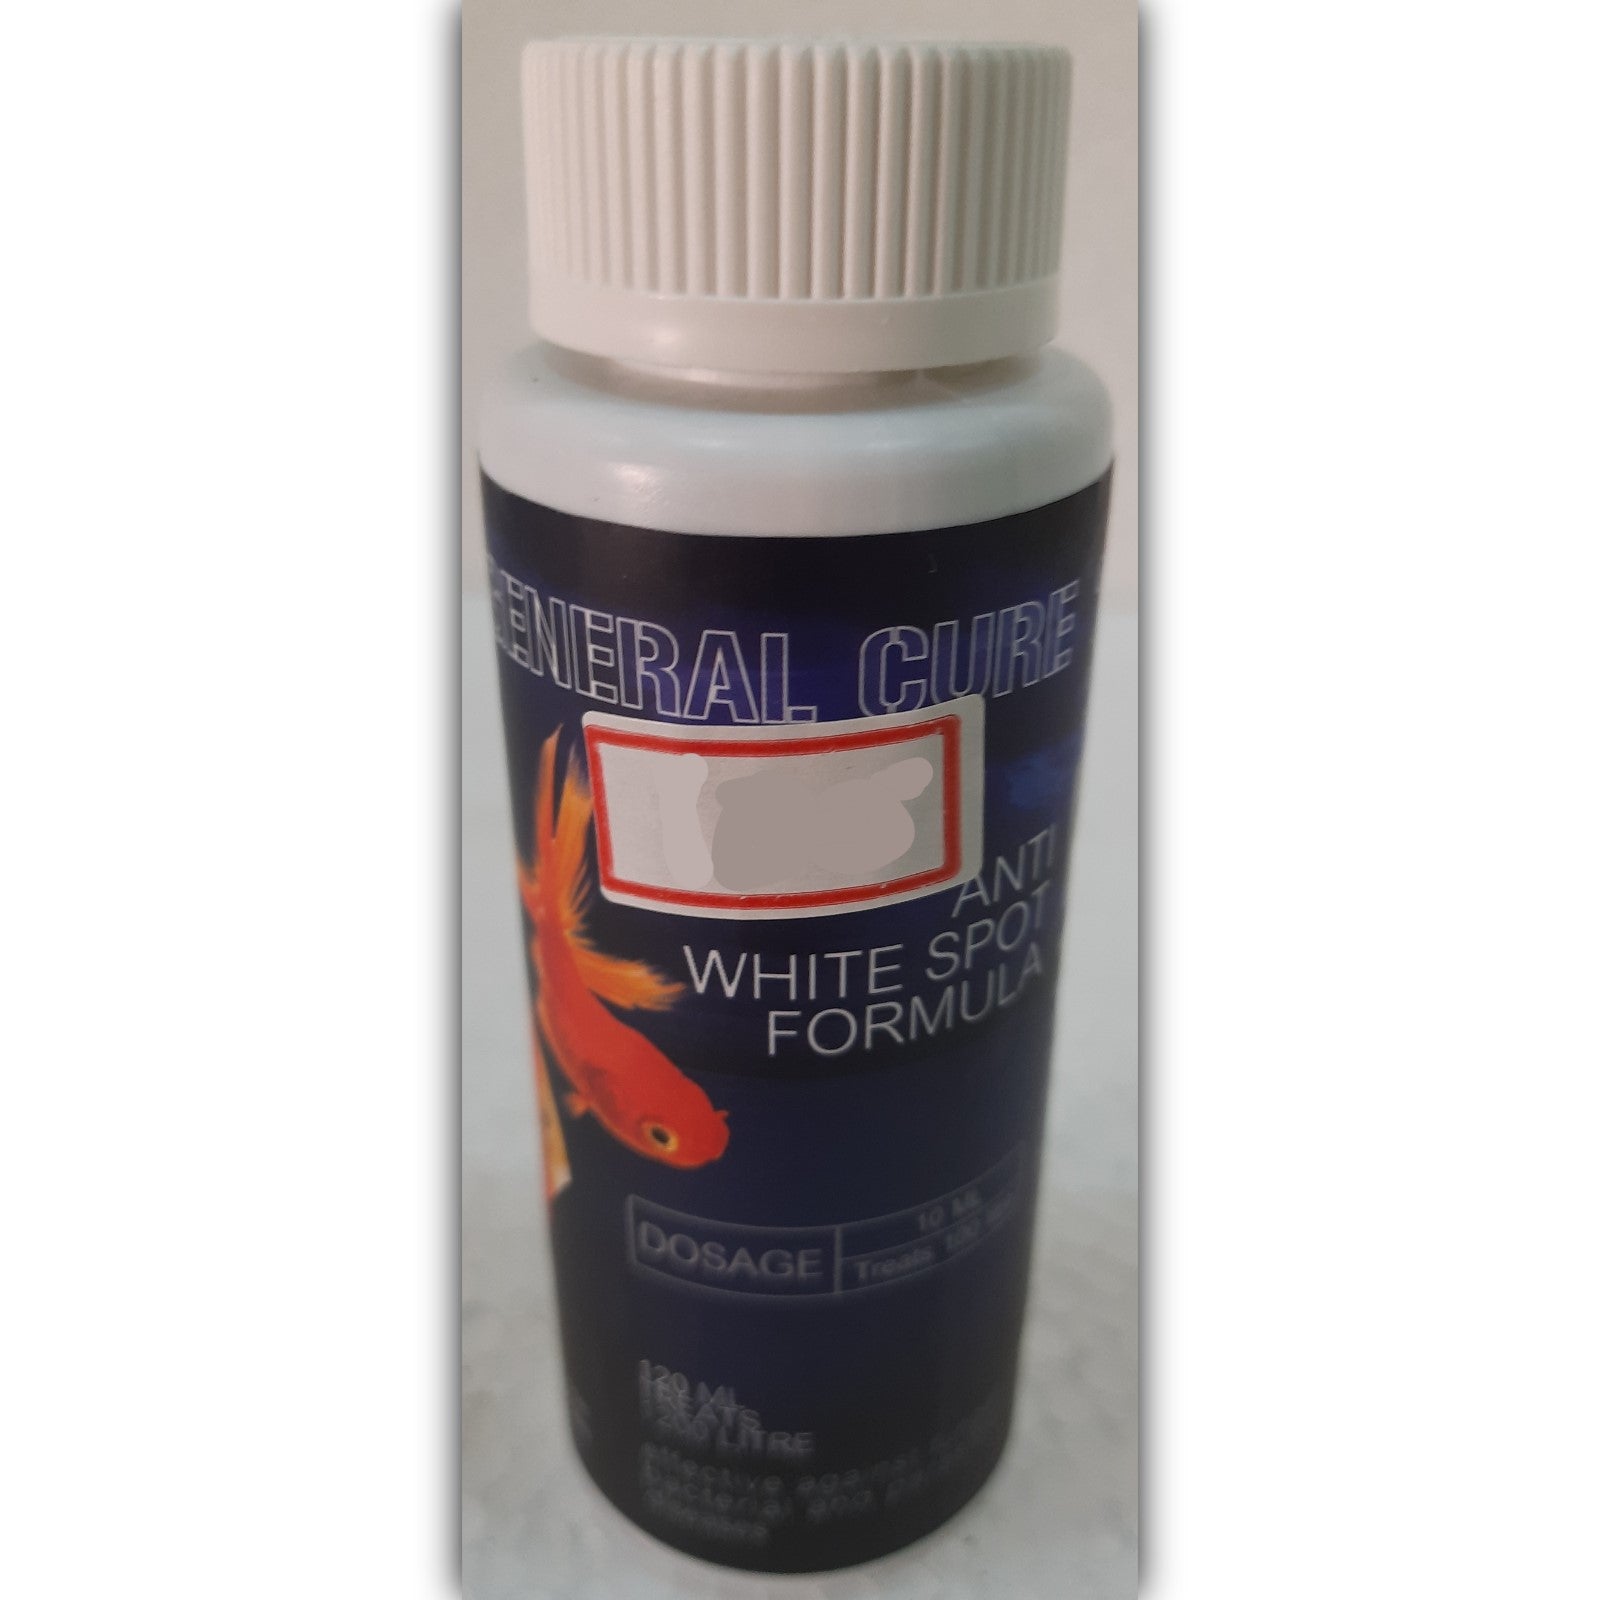 General Cure - Anti White Spot Formula 250 ml